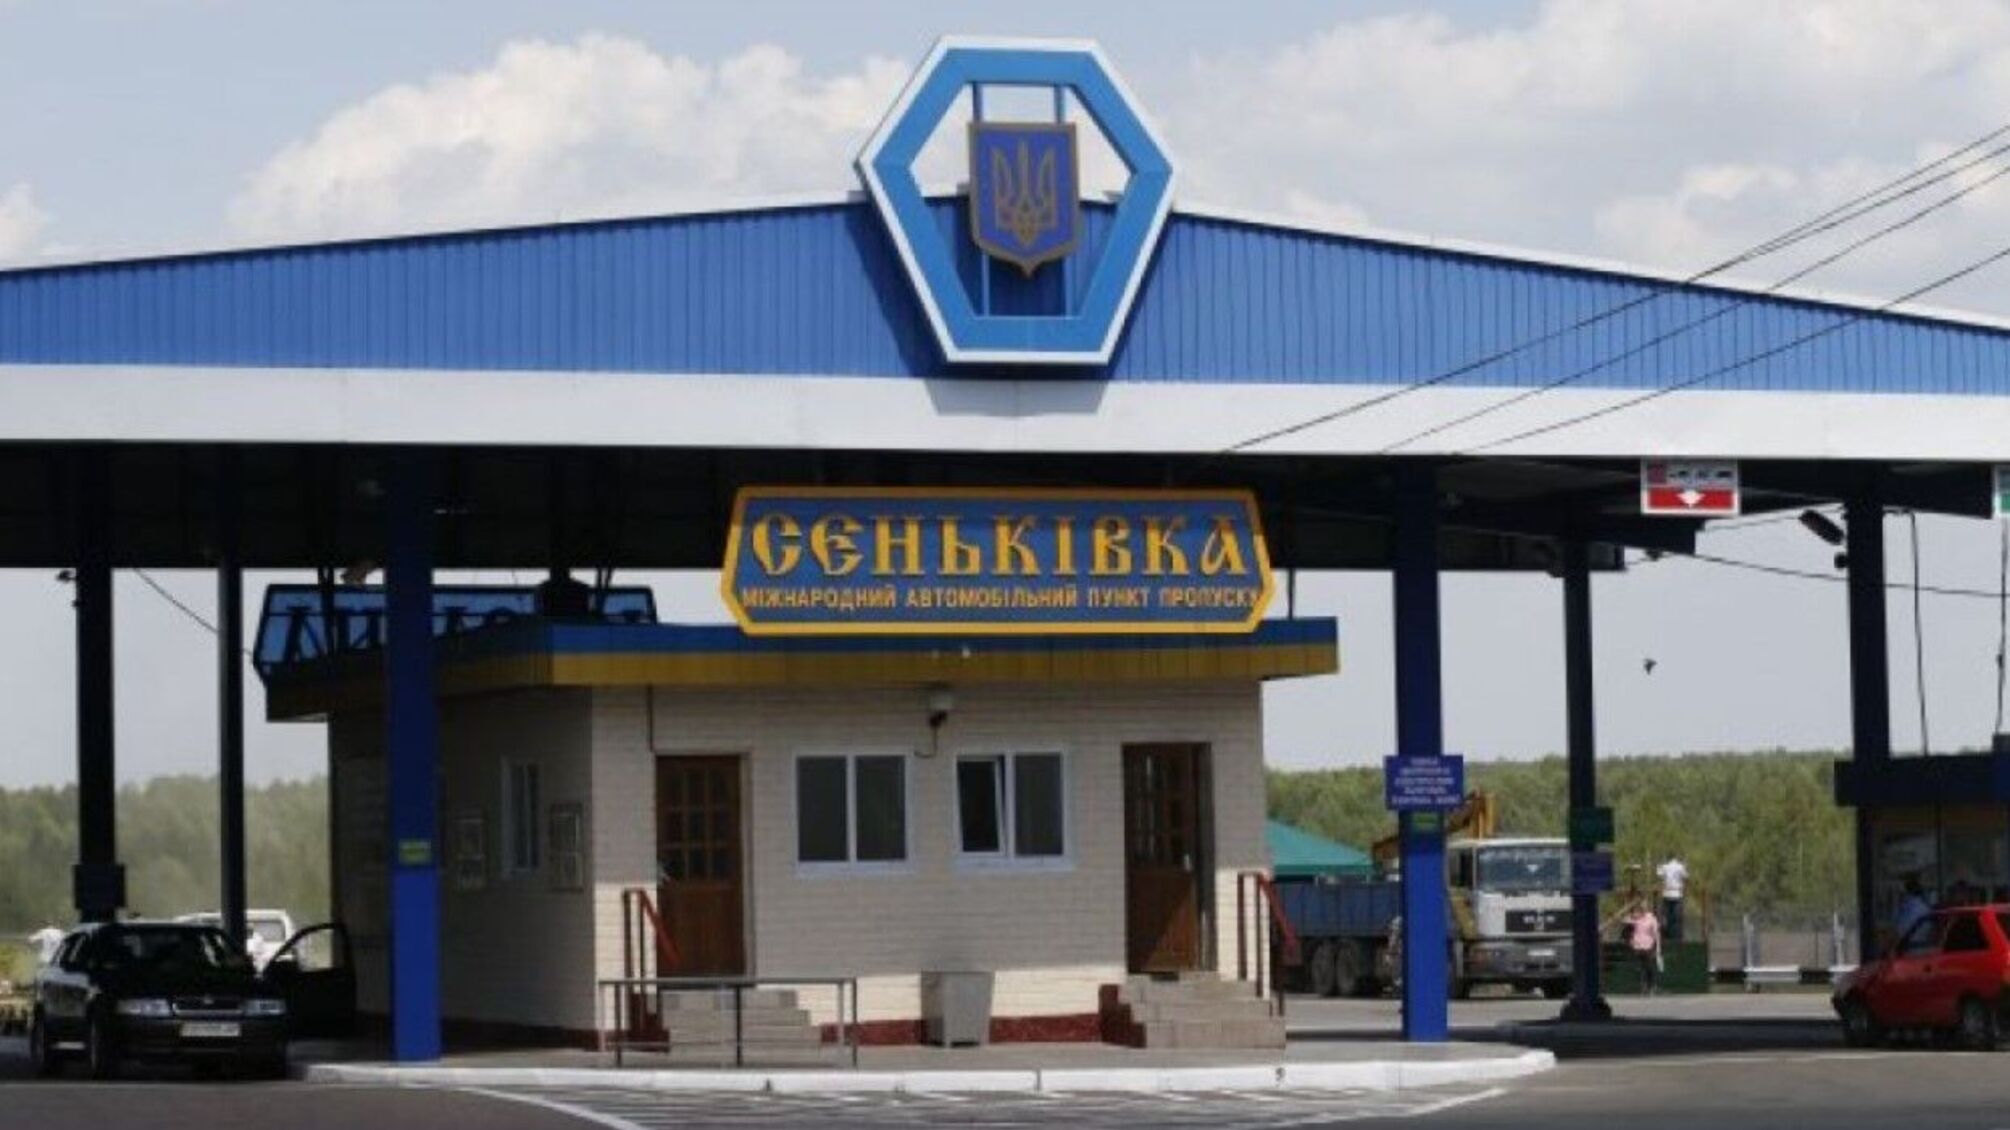 Сеньковка Черниговской области